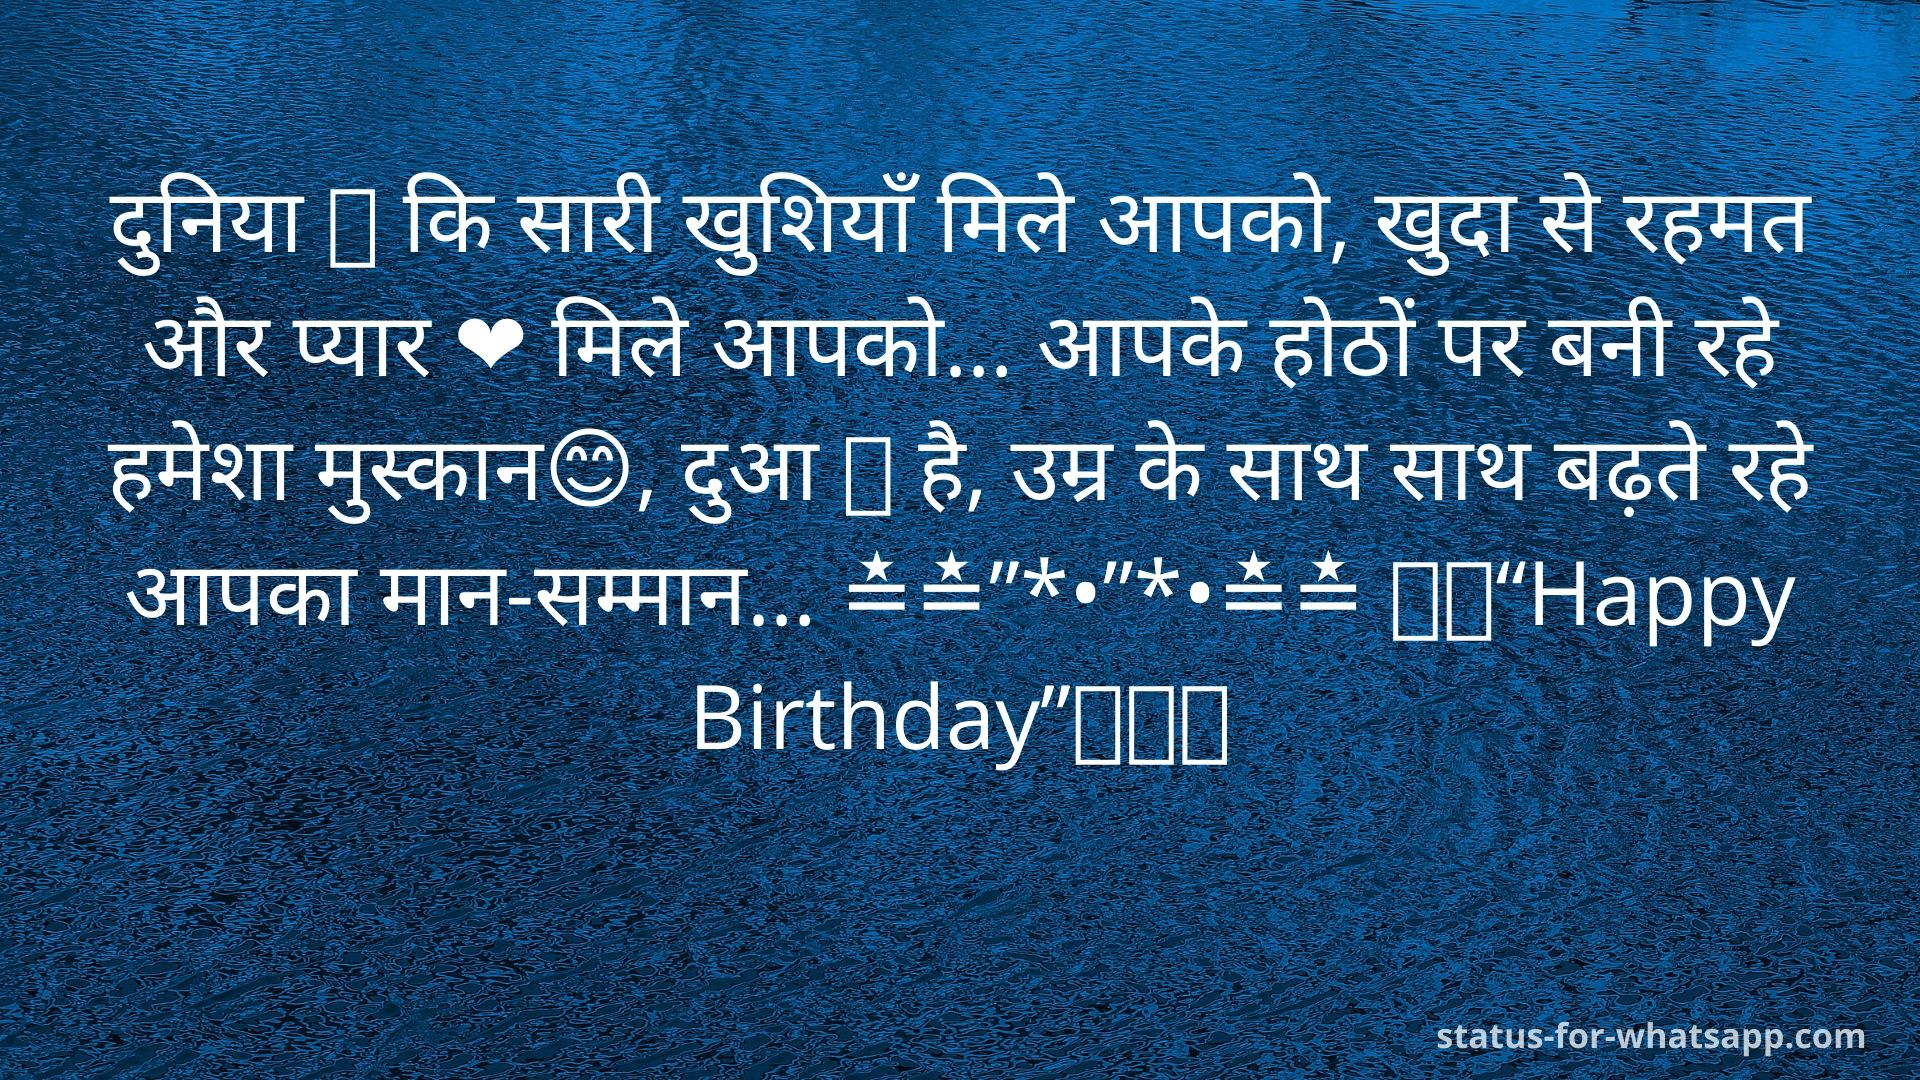 birthday shayari, happy birthday shayari, birthday shayari in hindi, happy birthday wishes in hindi shayari, happy birthday shayari in hindi